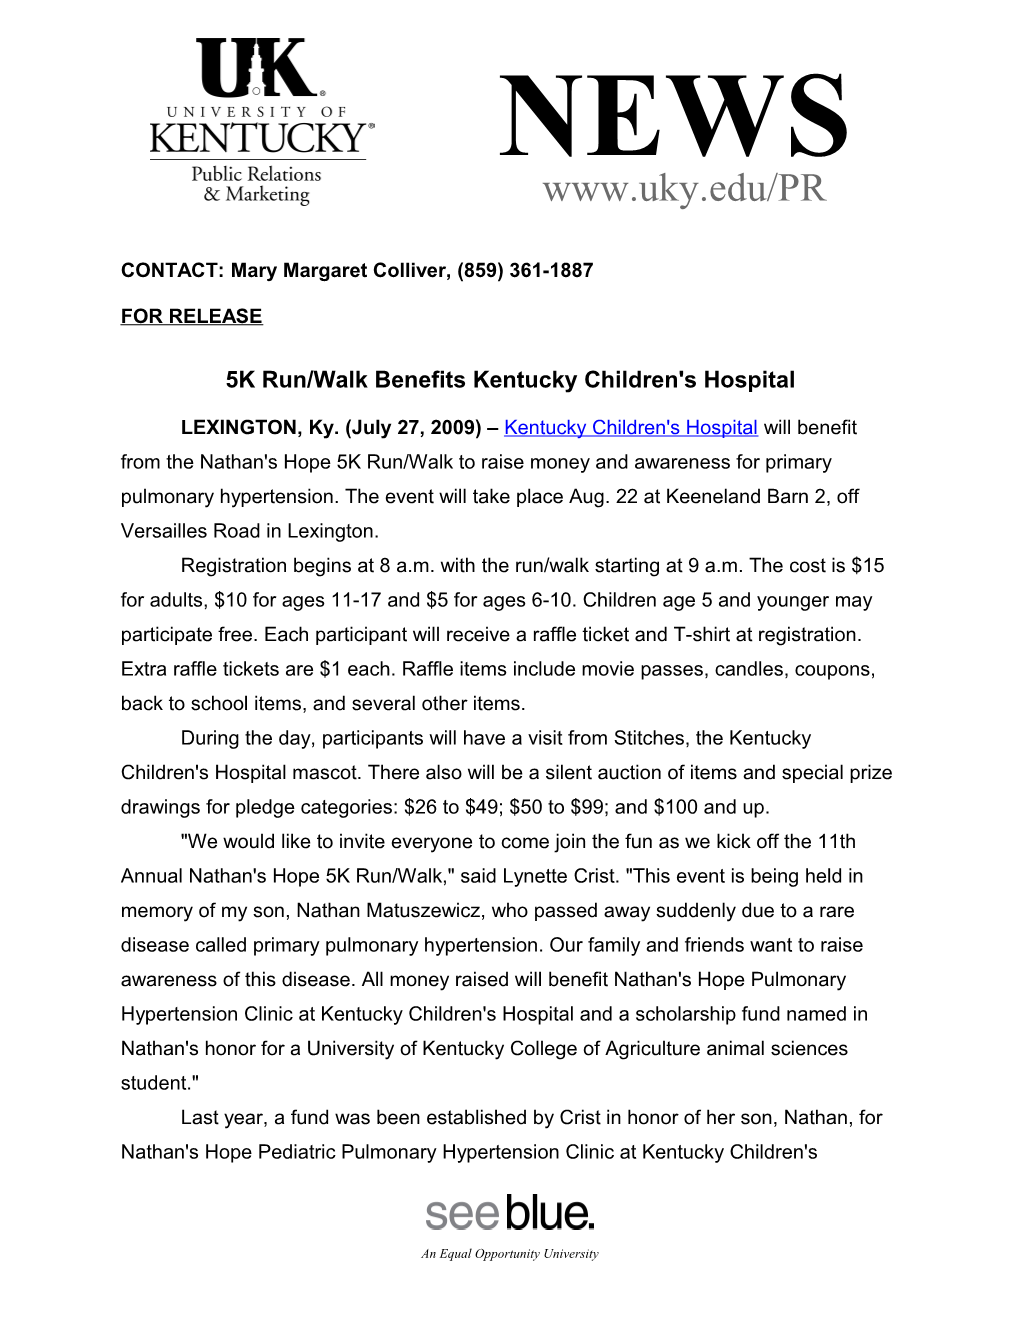 5K Run/Walk Benefits Kentucky Children's Hospital